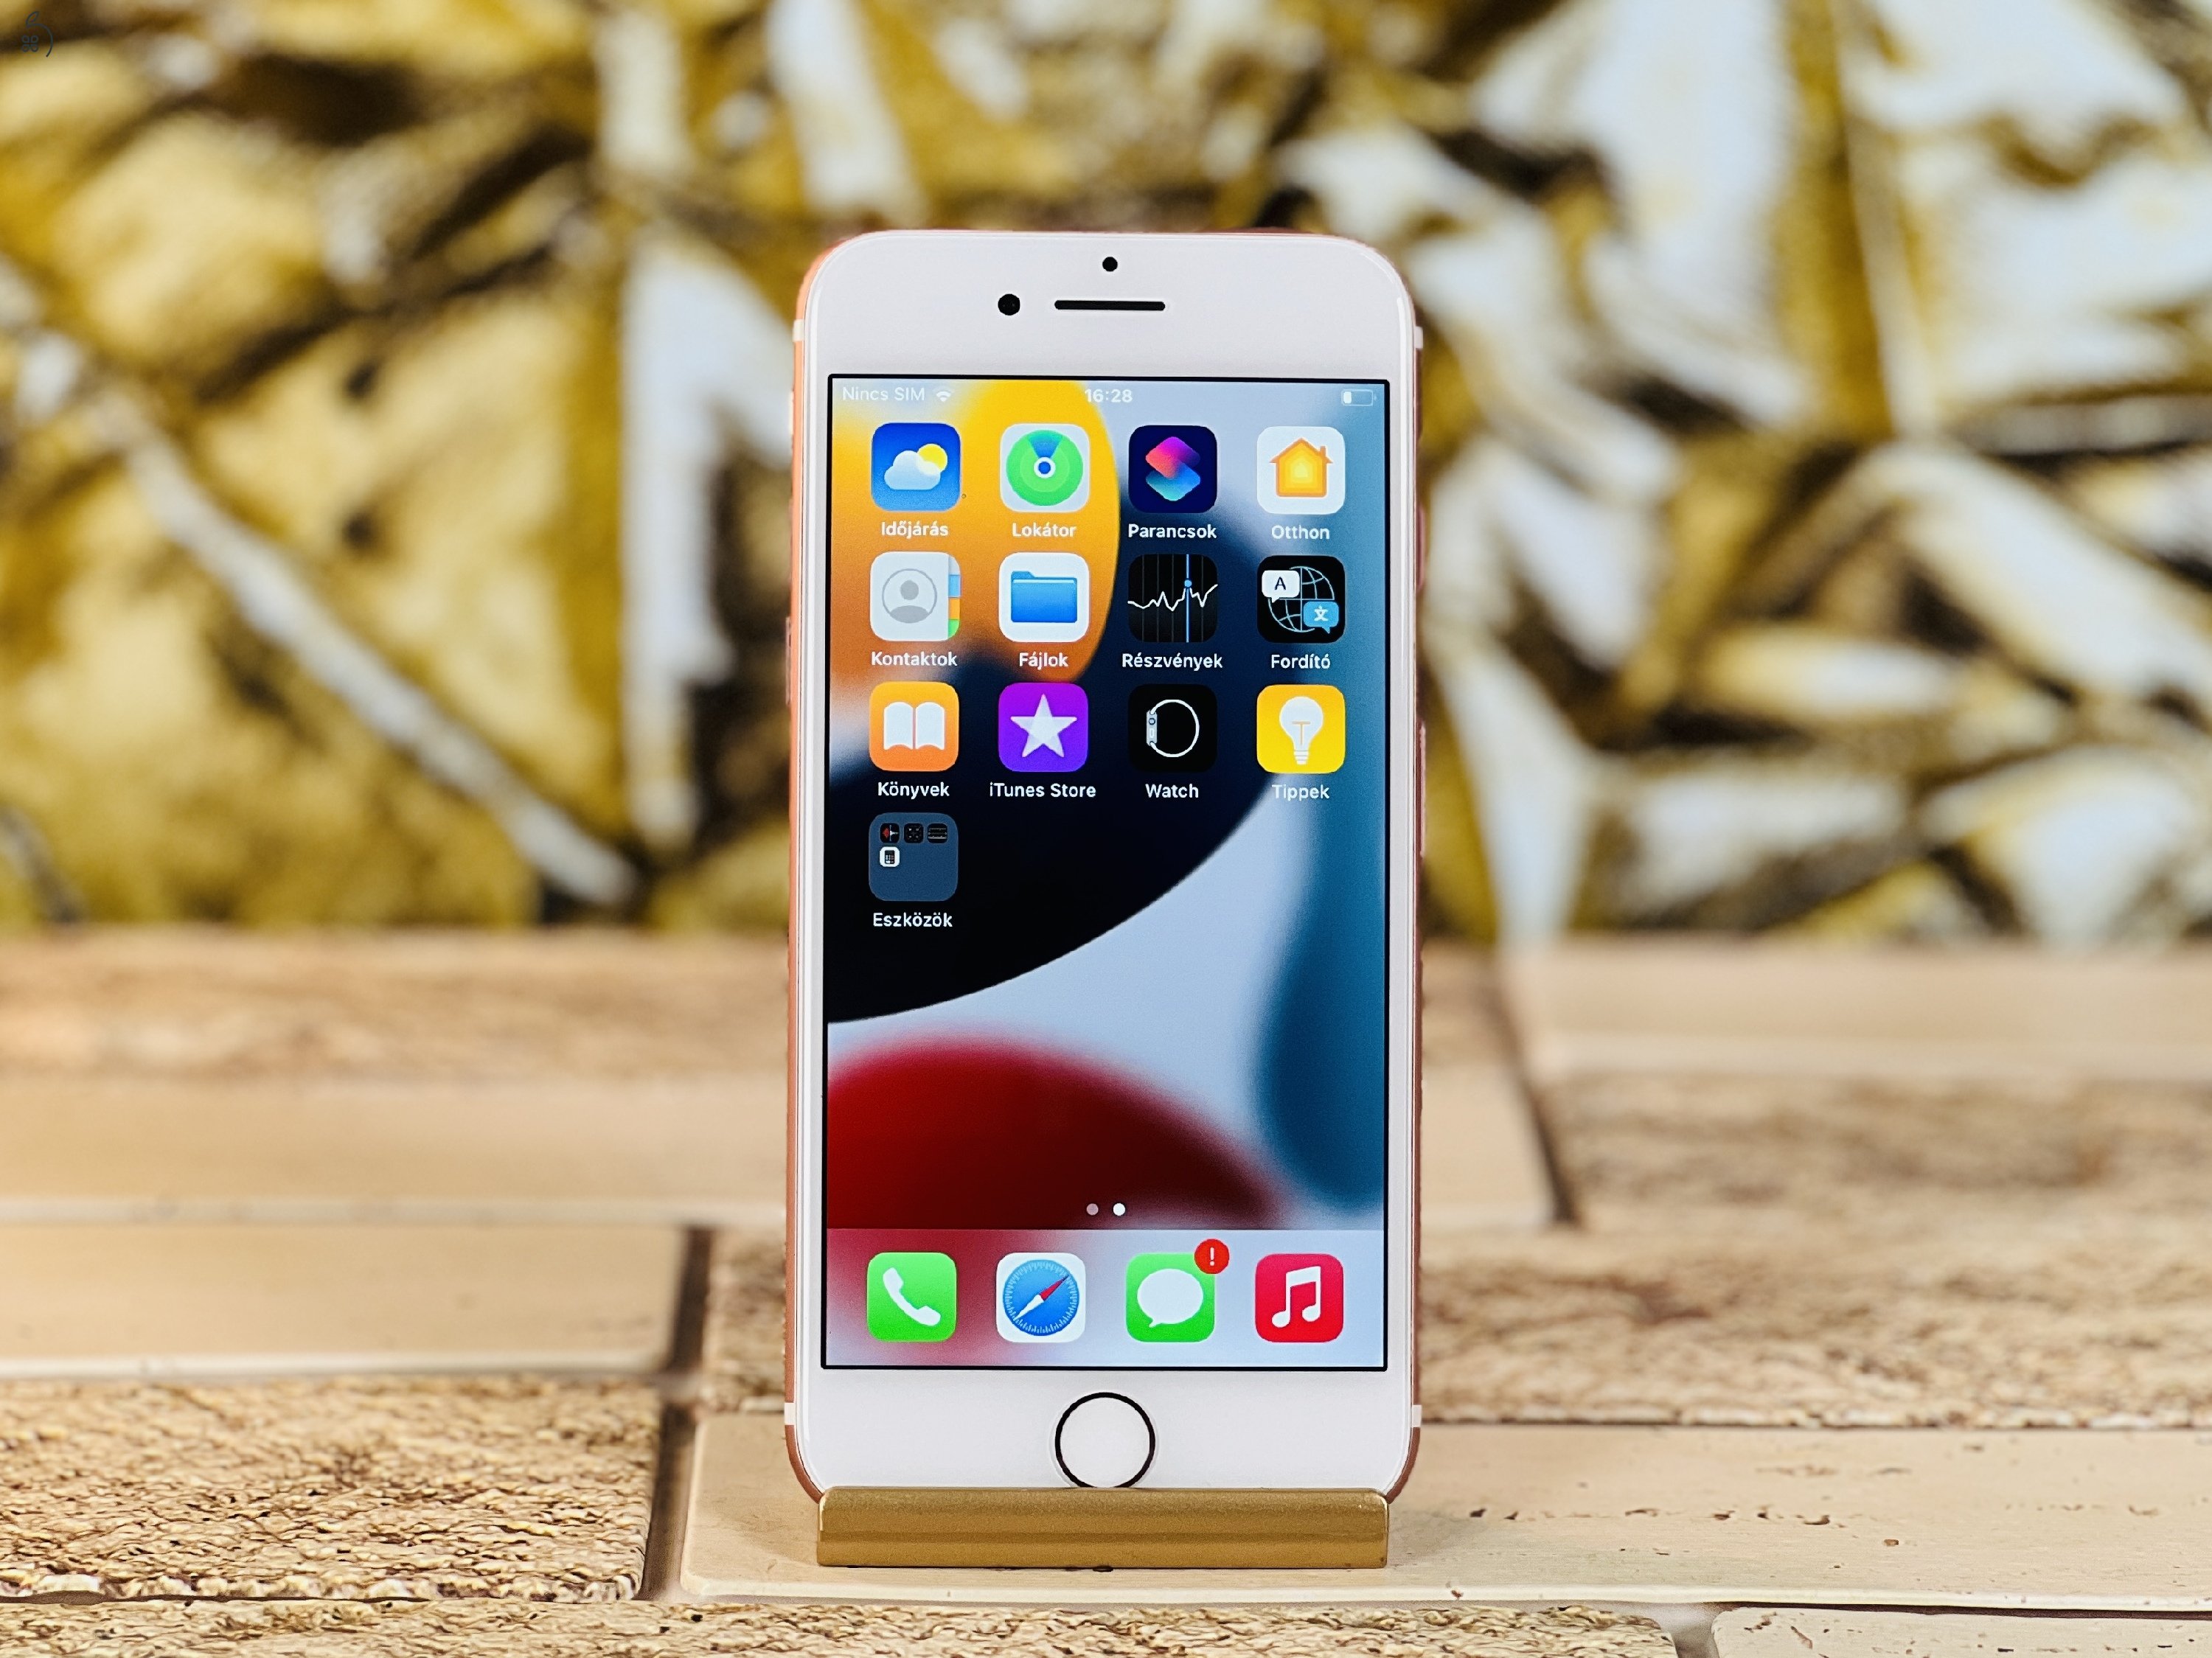 Eladó iPhone 7 32 GB Rose Gold 100% aksi szép állapotú - 12 HÓ GARANCIA - L5318